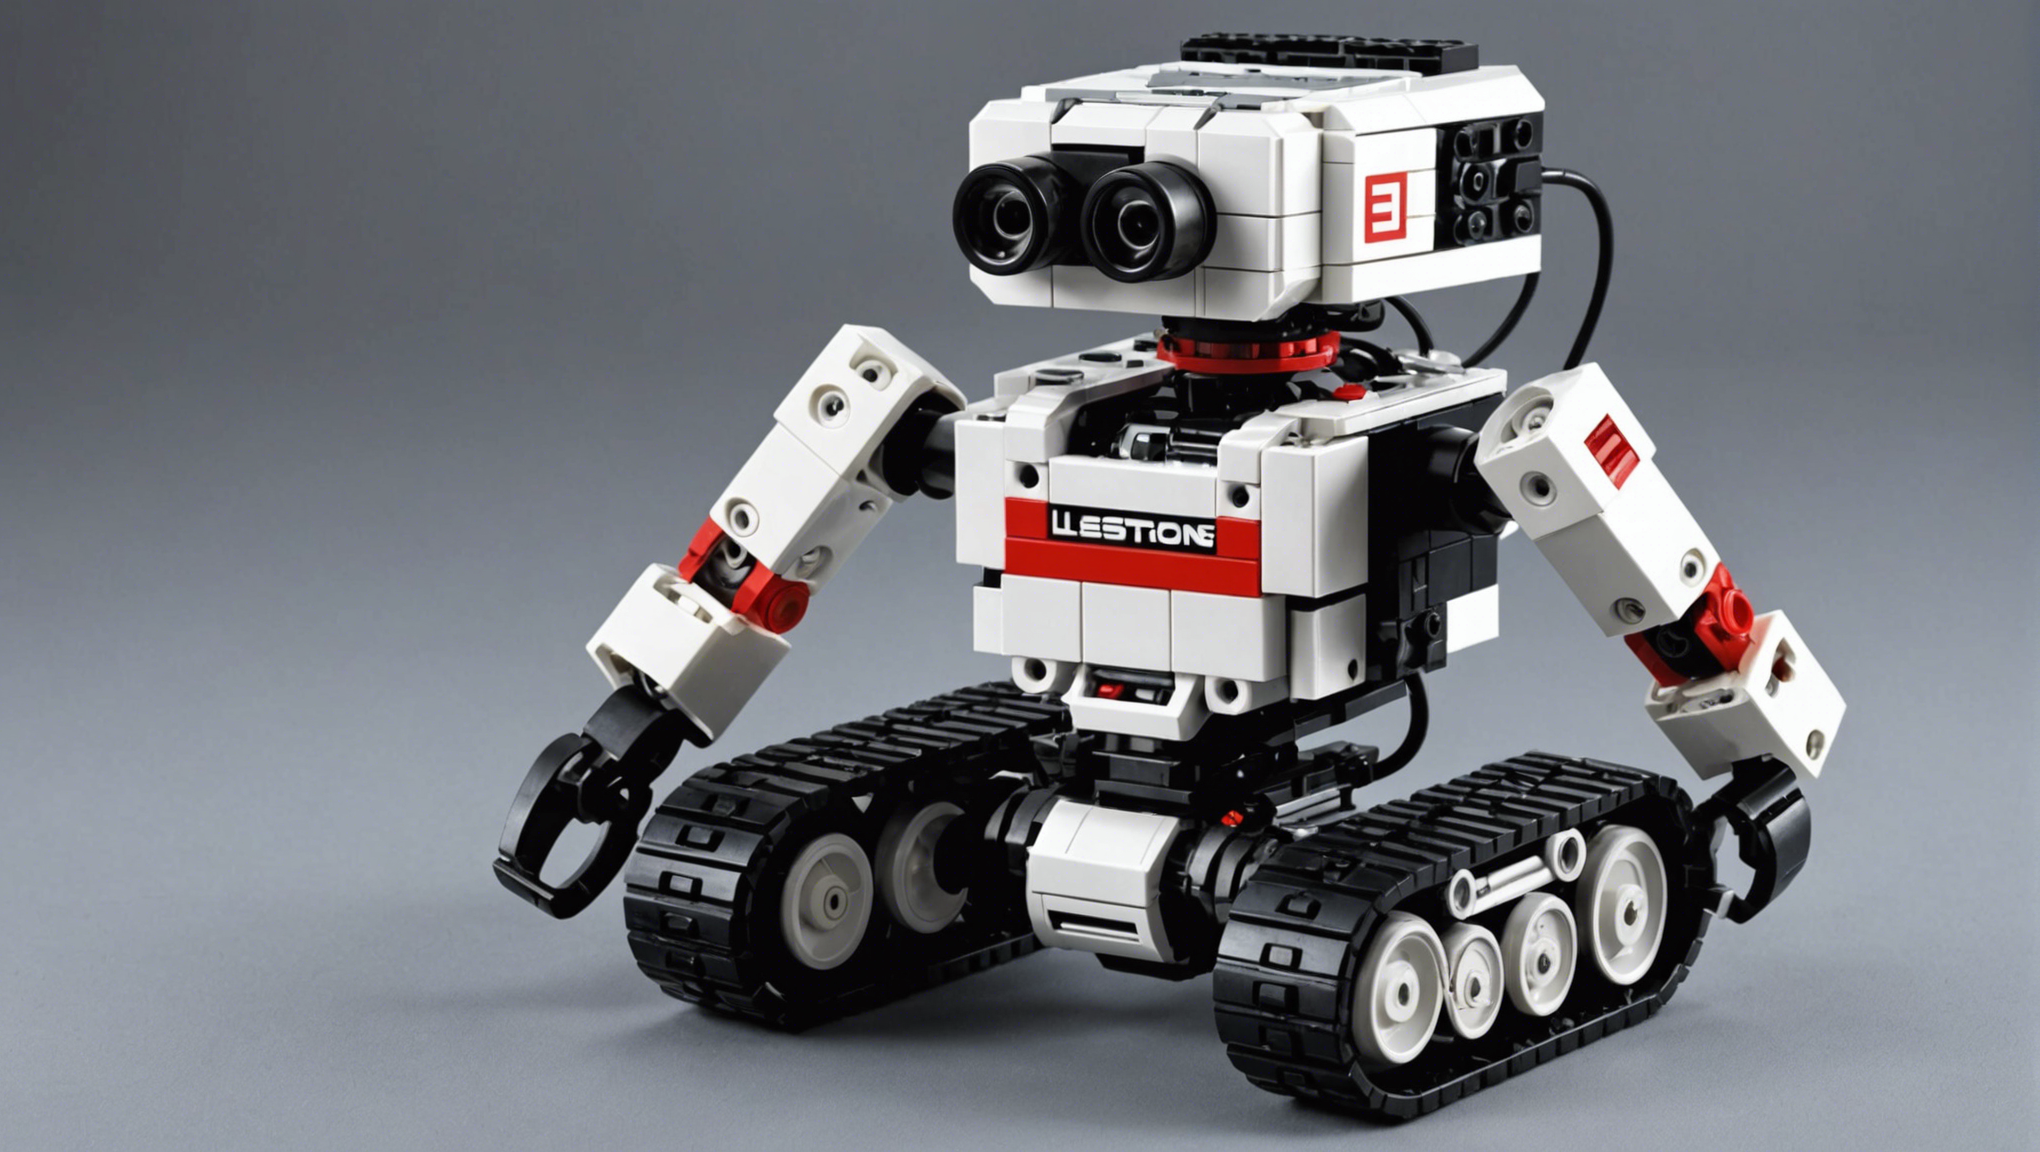 découvrez le robot programmable lego mindstorms ev3, désormais disponible et en stock en france chez génération robots. apprenez à construire et programmer votre propre robot dès maintenant !